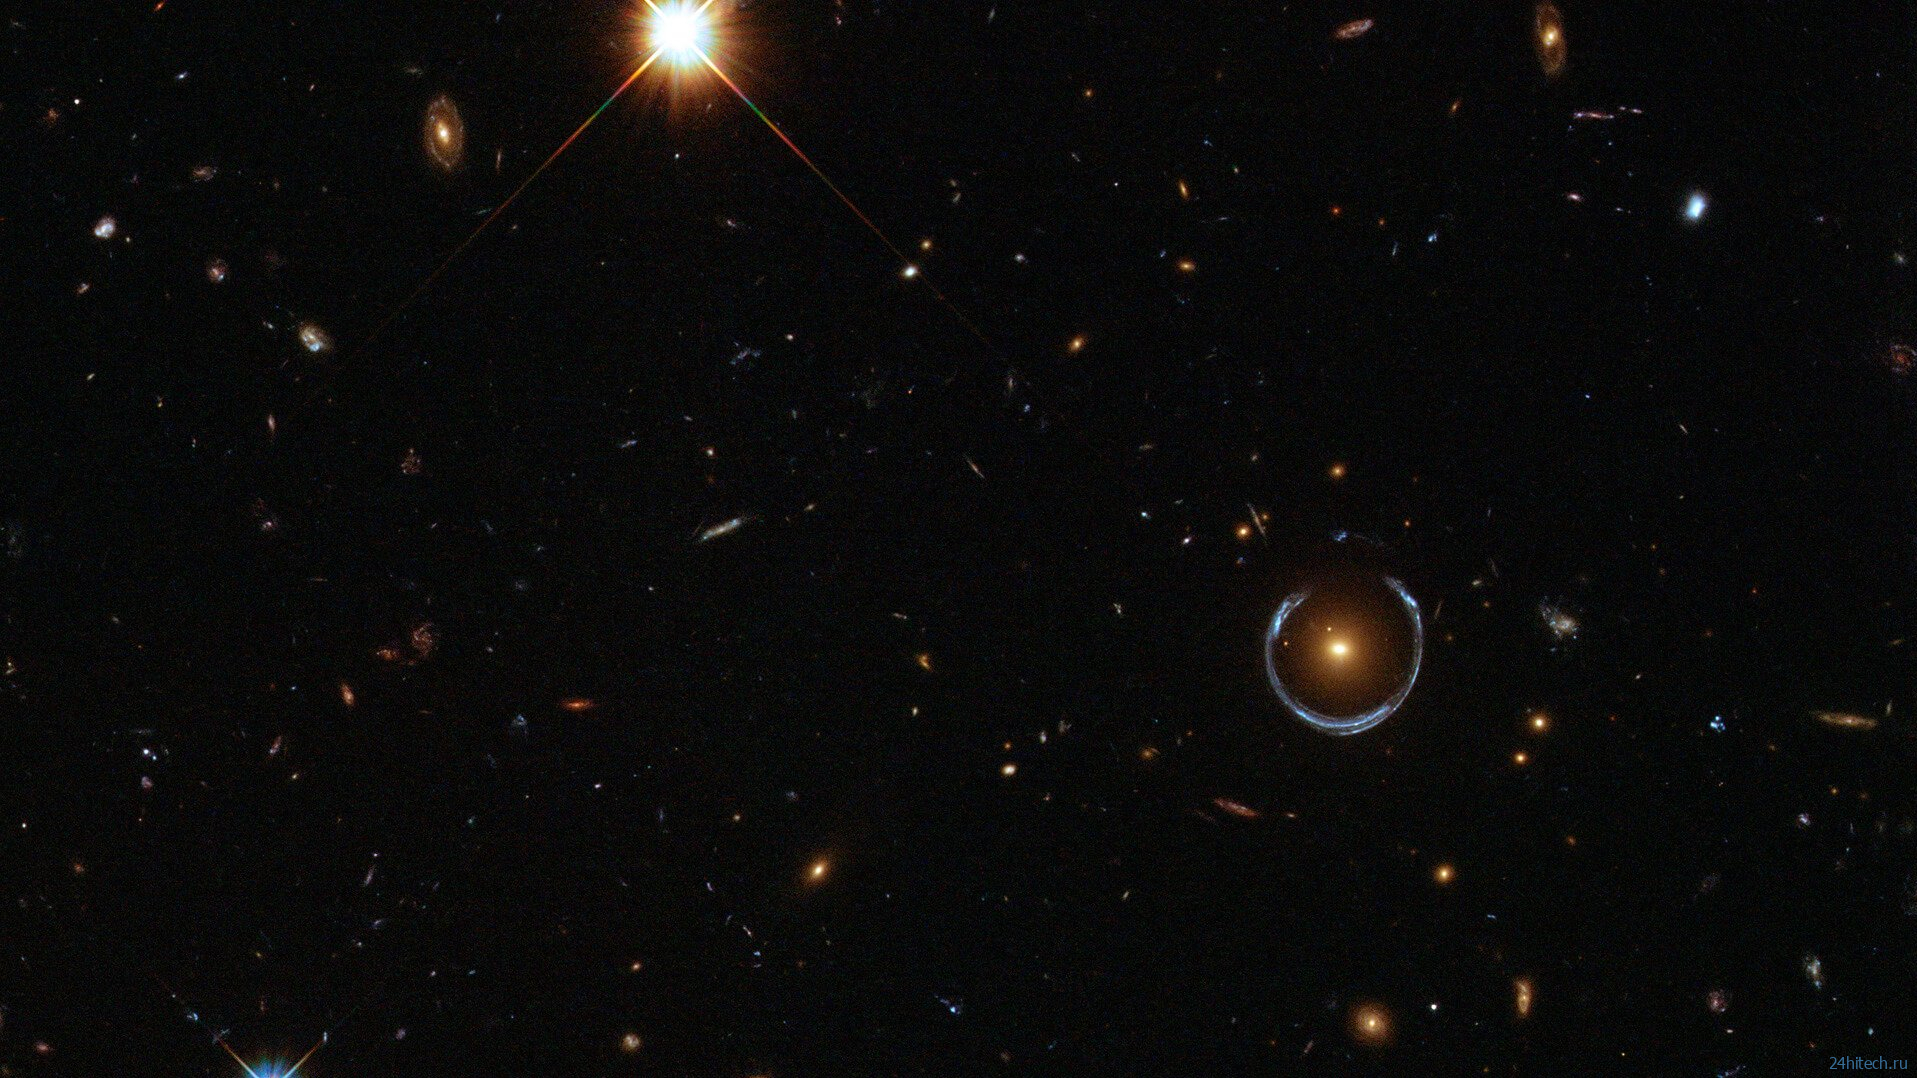 Hubble сфотографировал самое большое из известных ;колец Эйнштейна 